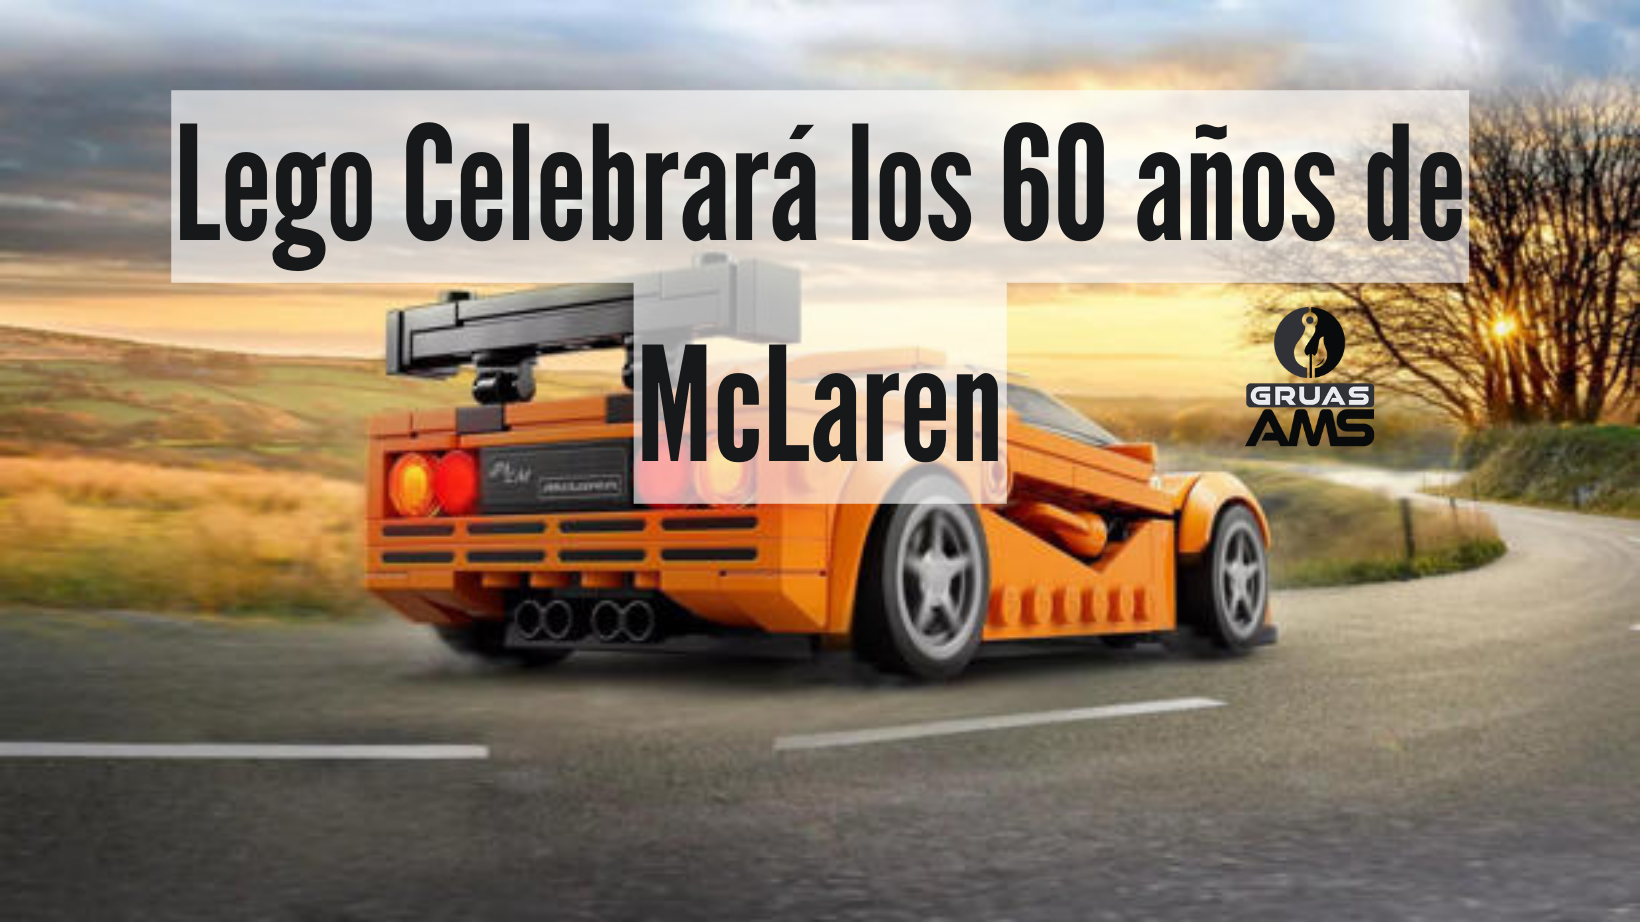 Lego Celebrará los 60 años de McLaren